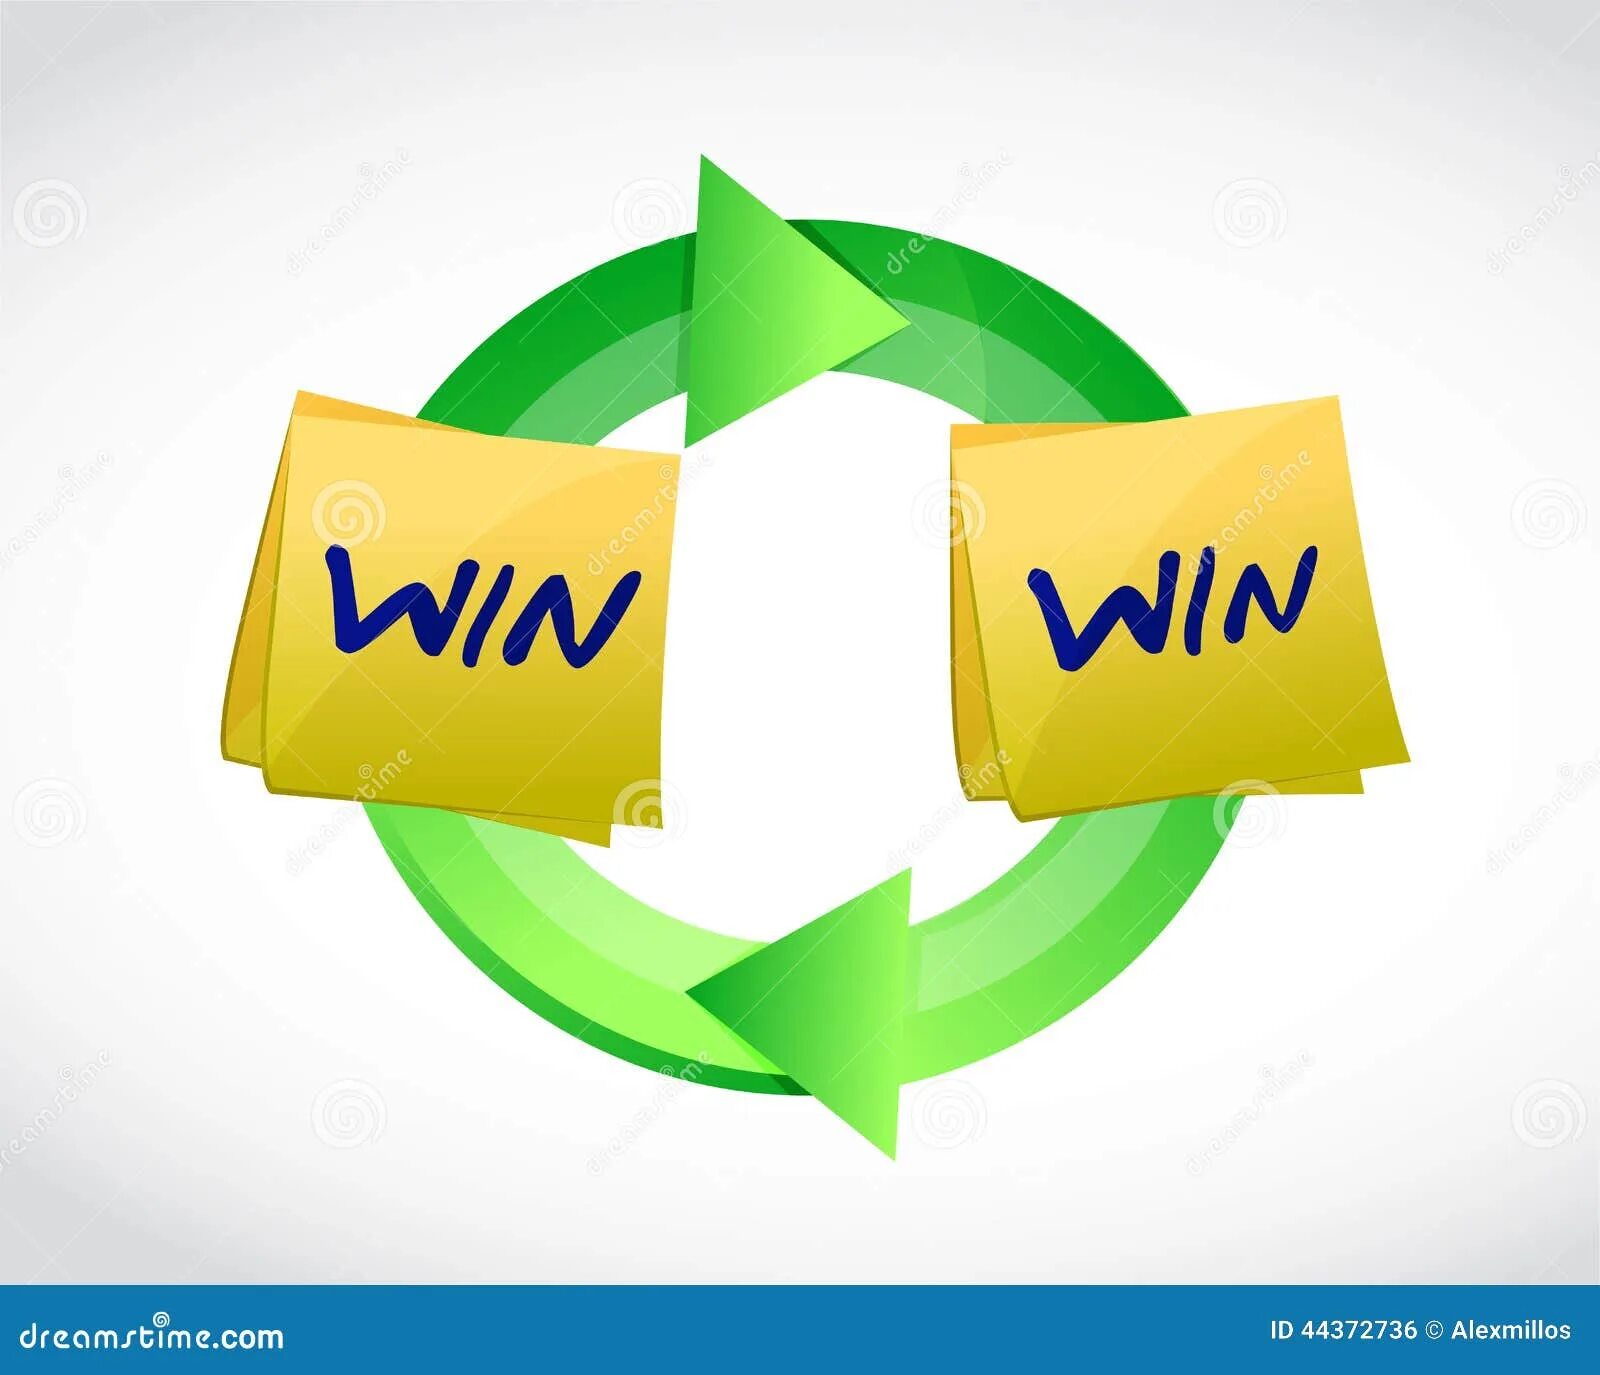 Win win result. Win win стратегия. Переговоры win-win это. Winwin логотип. Win+e.